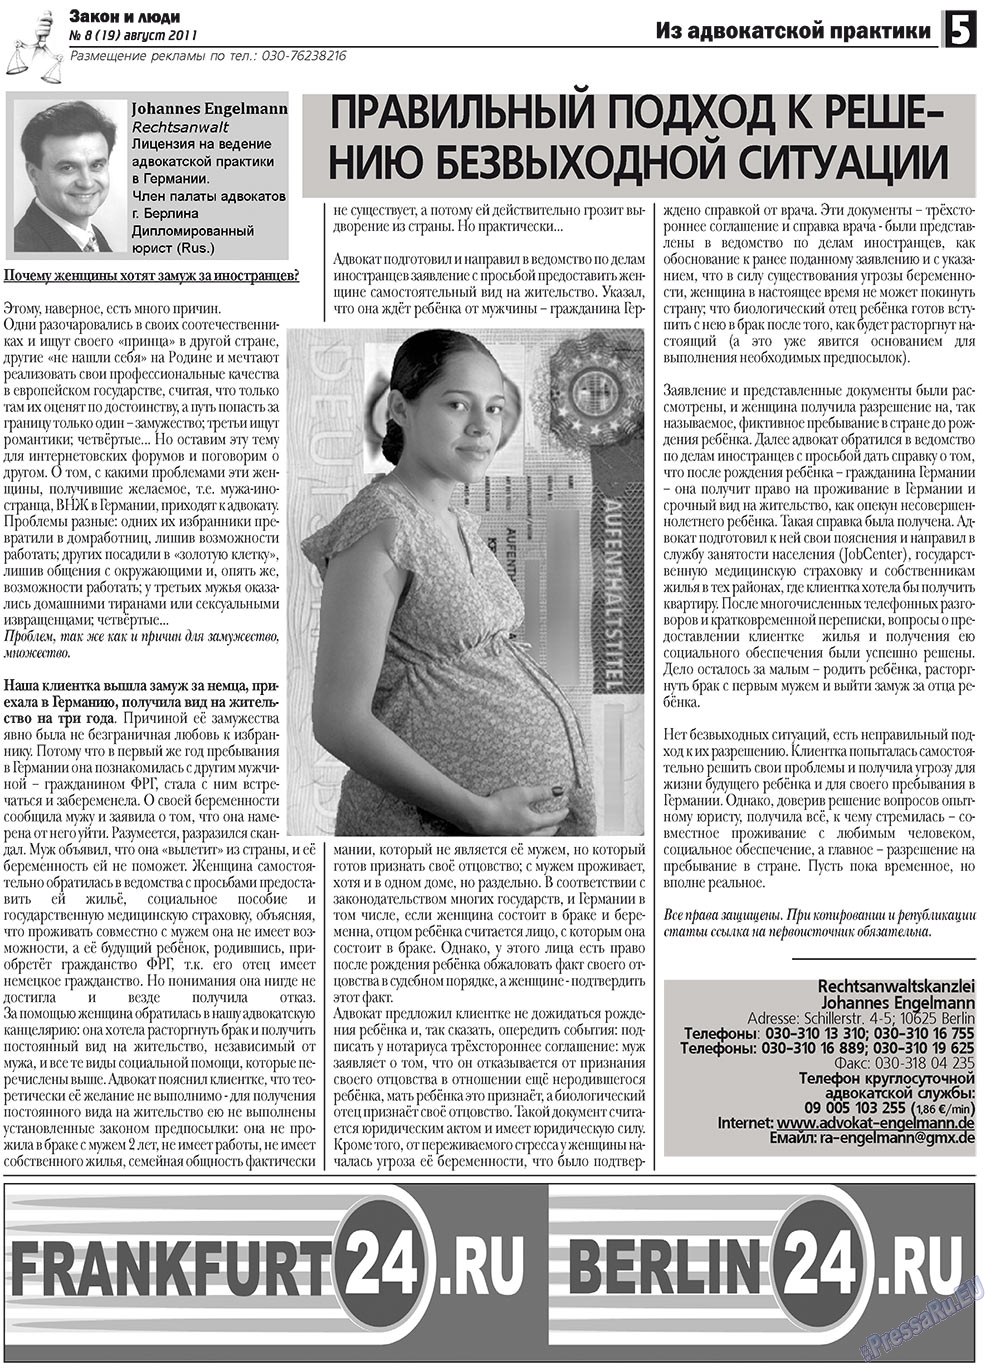 Закон и люди (газета). 2011 год, номер 8, стр. 5